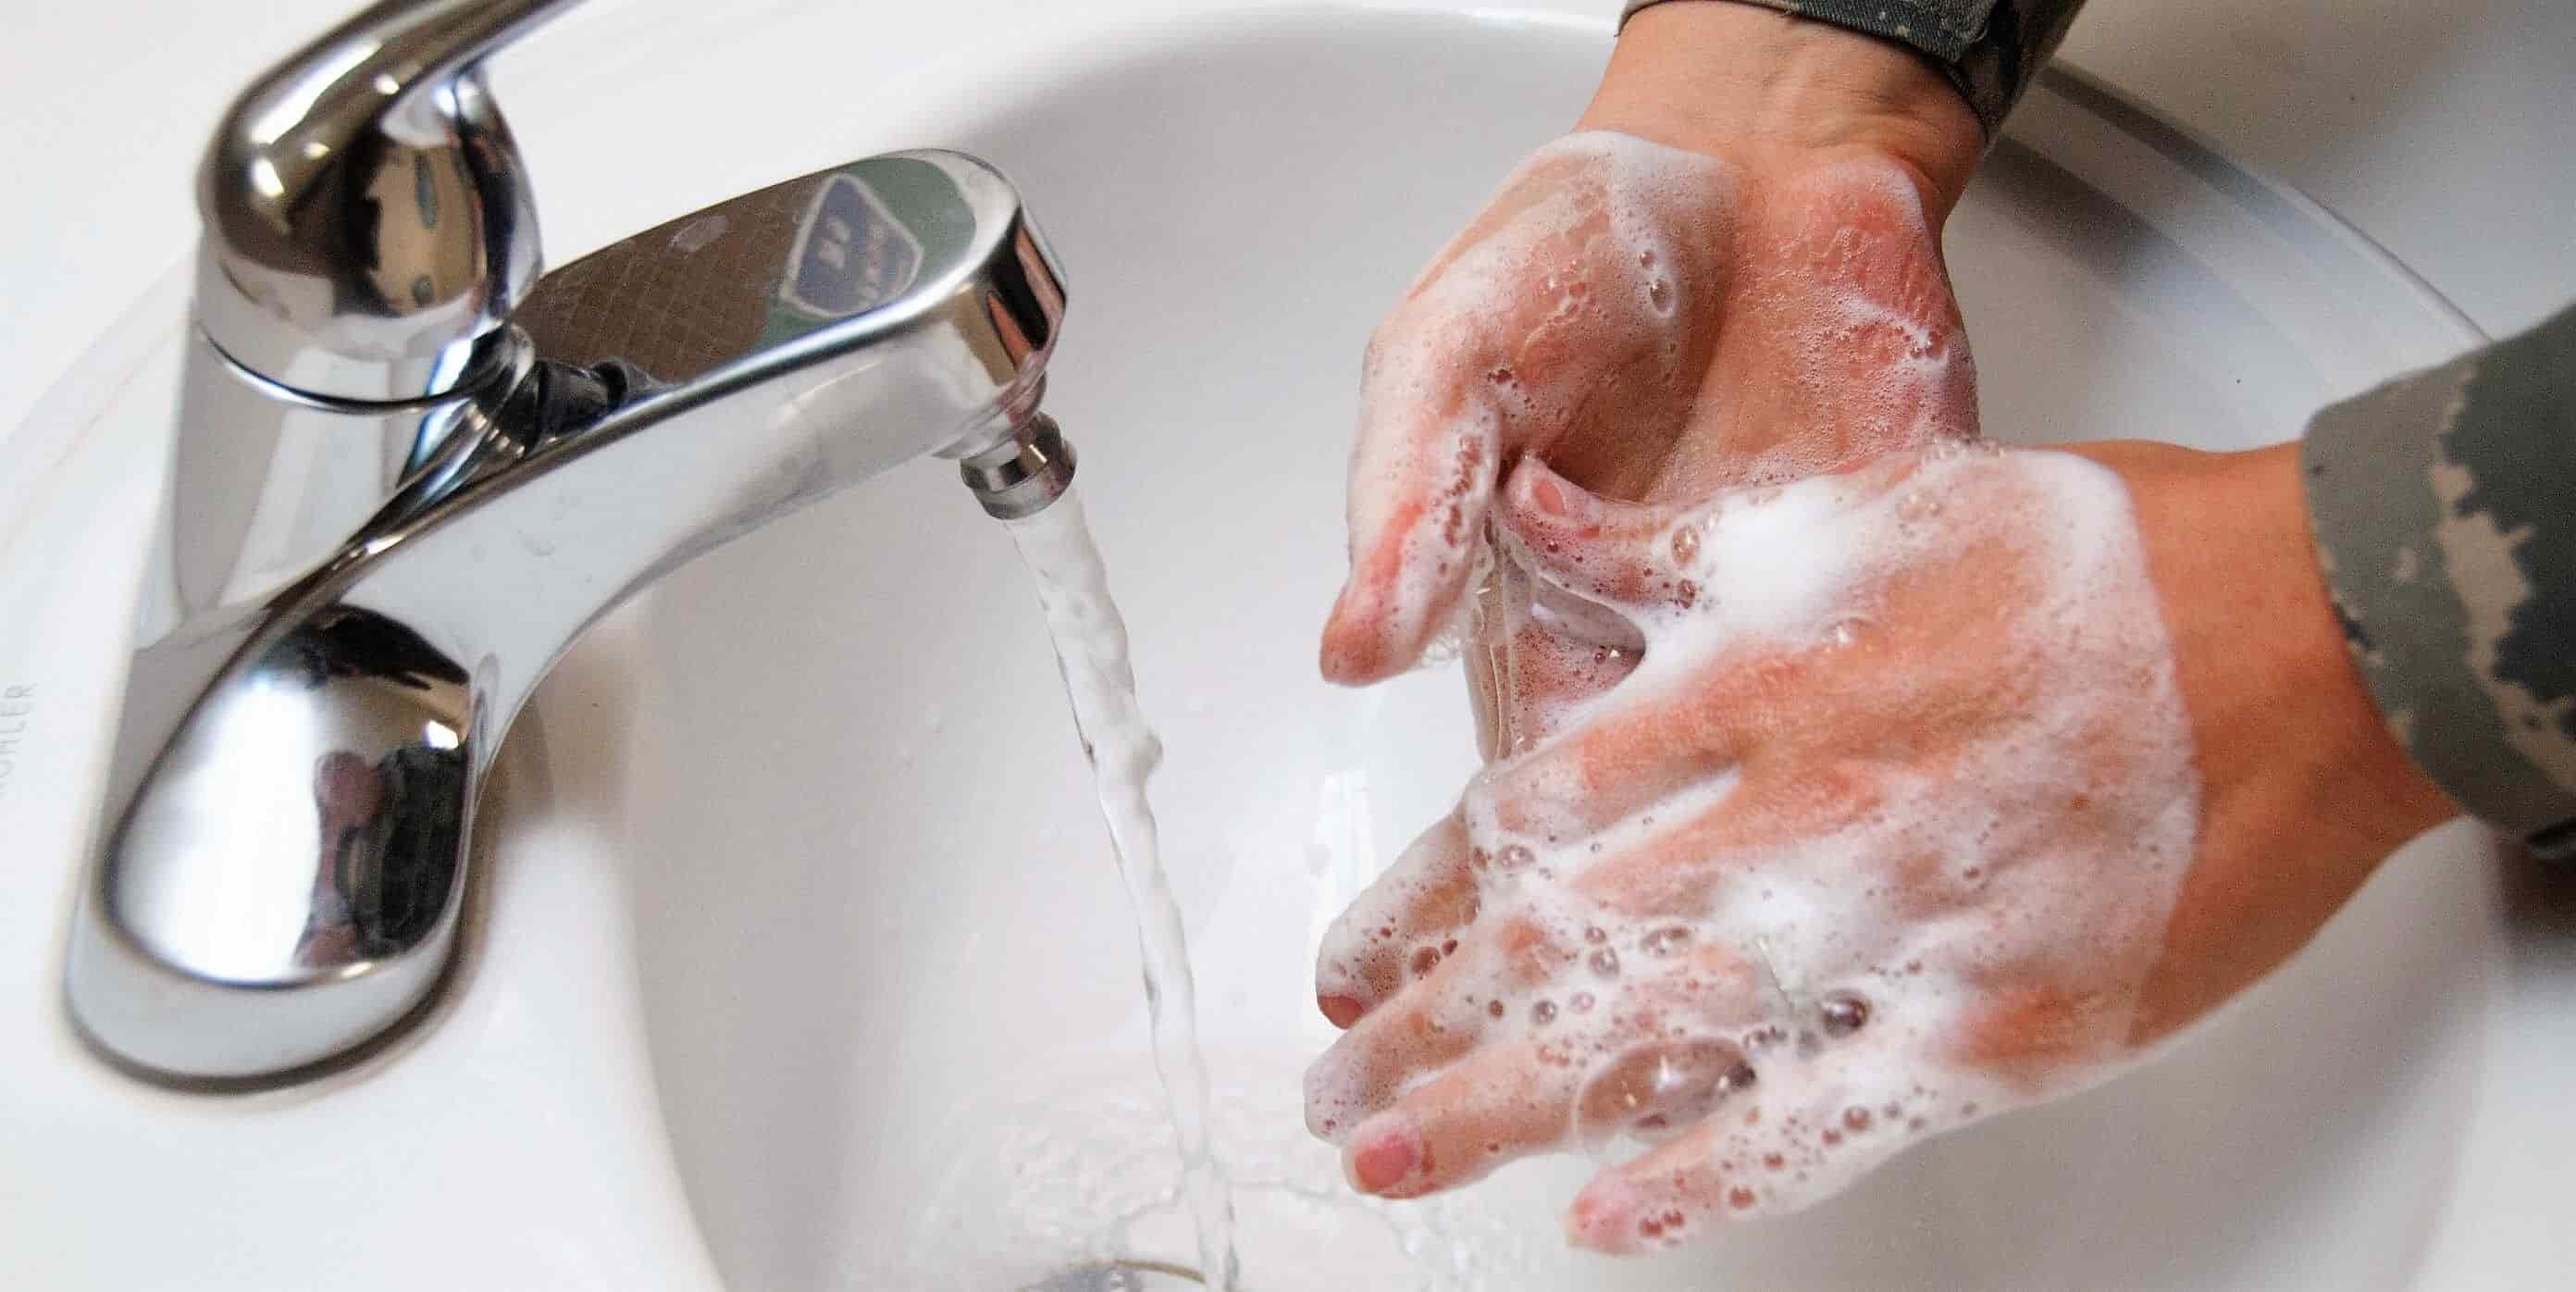 forma correcta de lavarse las manos